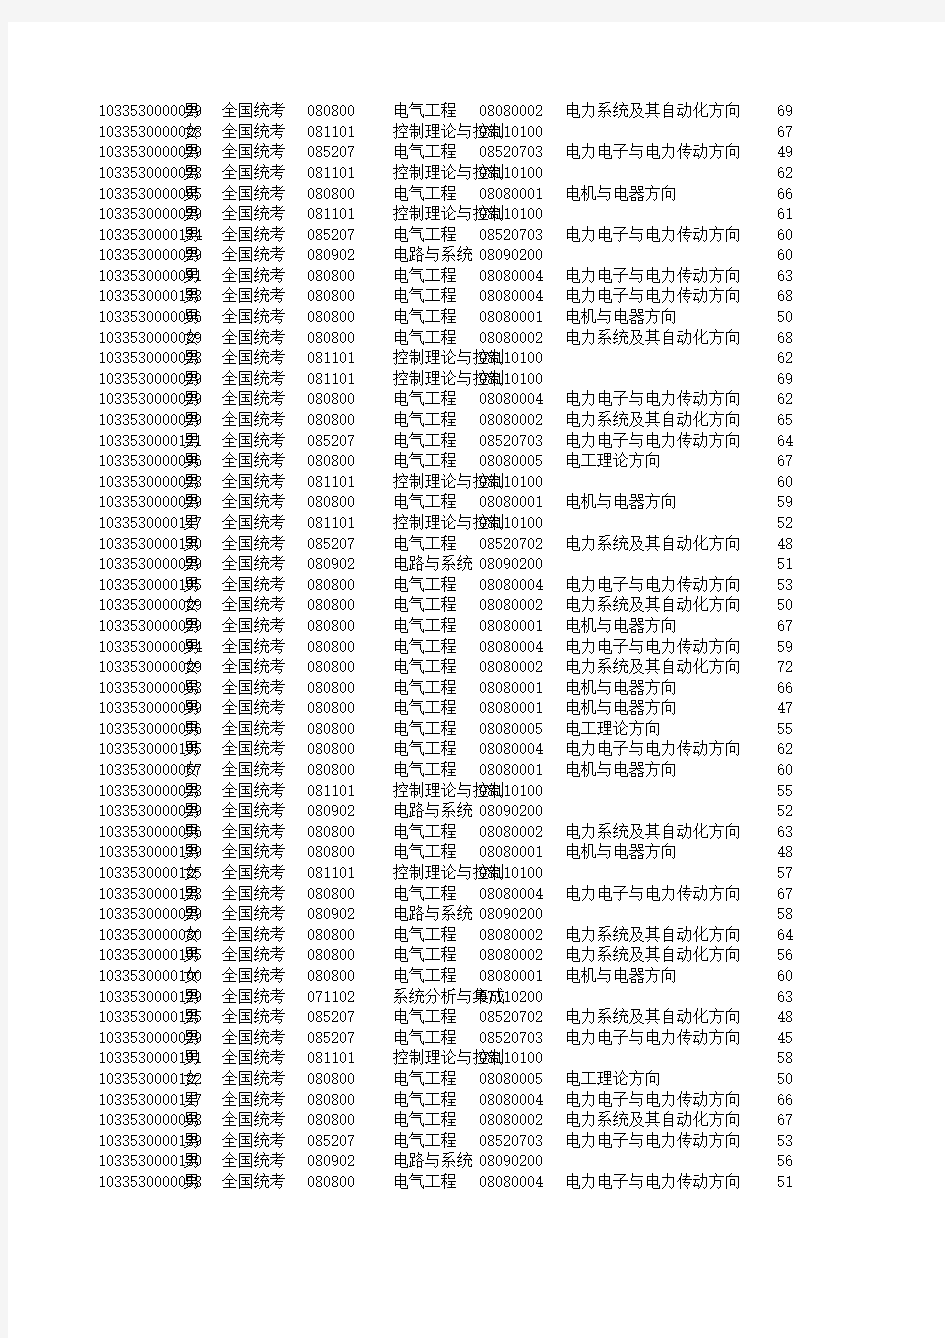 2013研究生考试浙江大学电气工程学院成绩排名